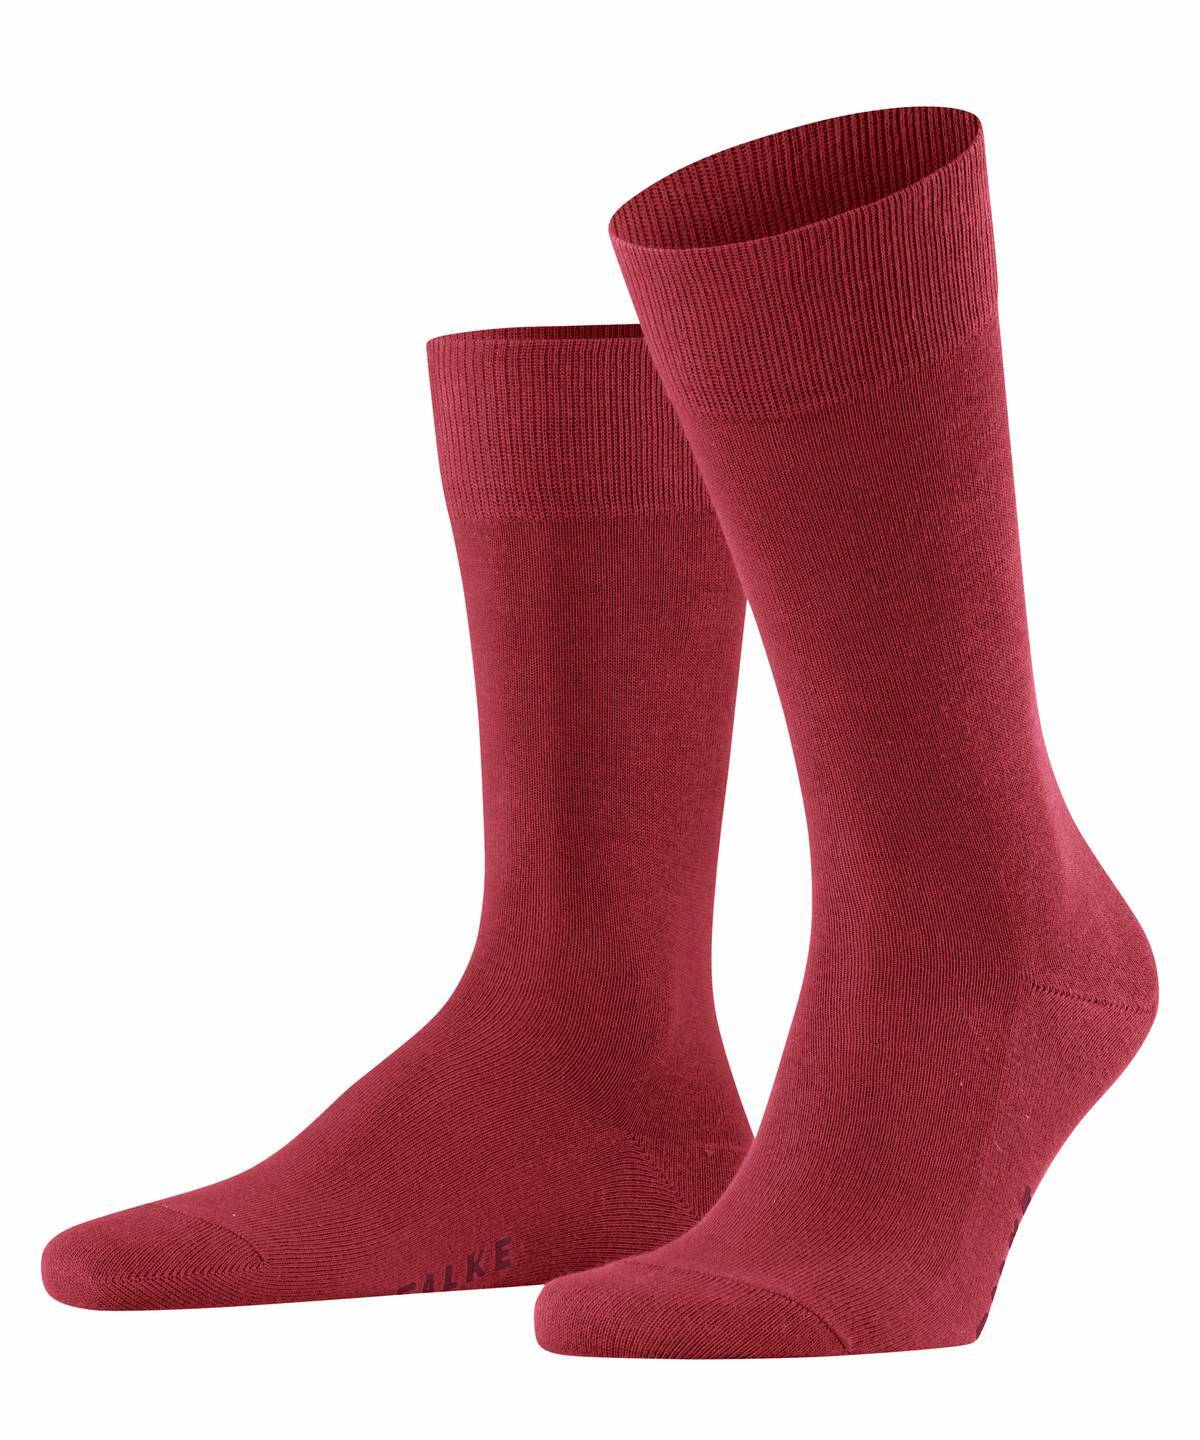 Falke Herren Socken Hersteller: Falke Bestellnummer:4031309170589